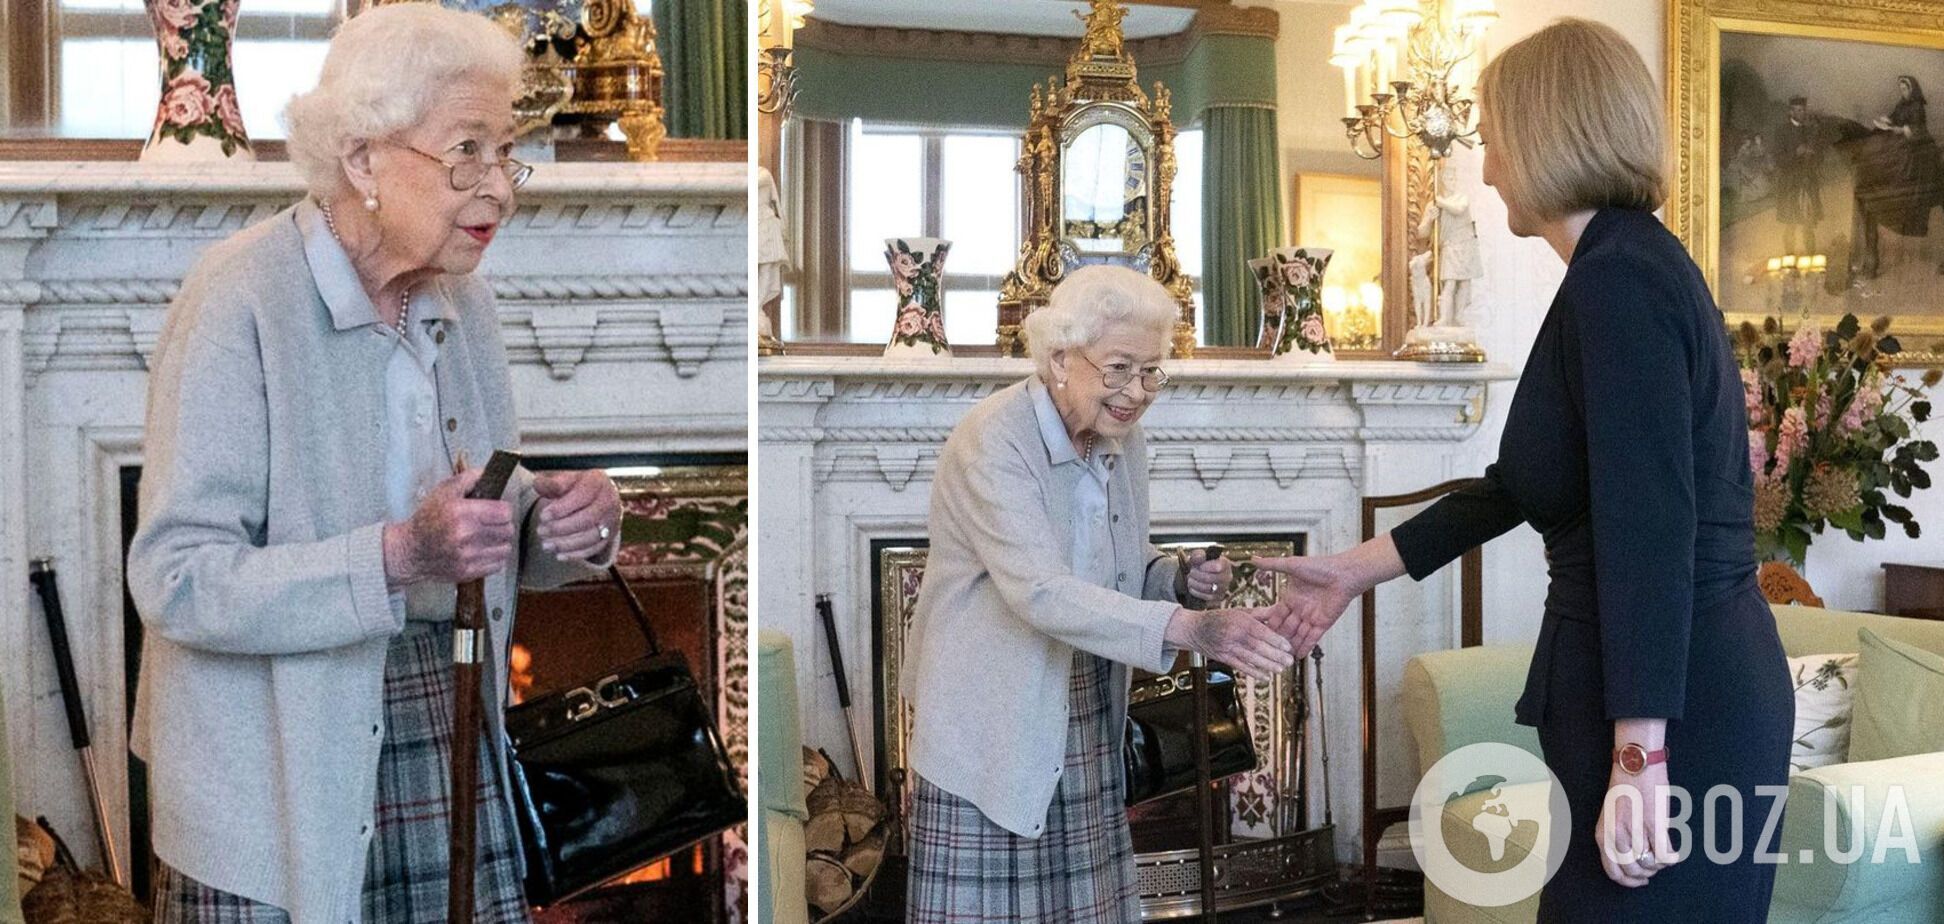 Новые снимки Елизаветы ІІ с Лиз Трасс обеспокоили фанатов: на руке королевы заметили огромный синяк